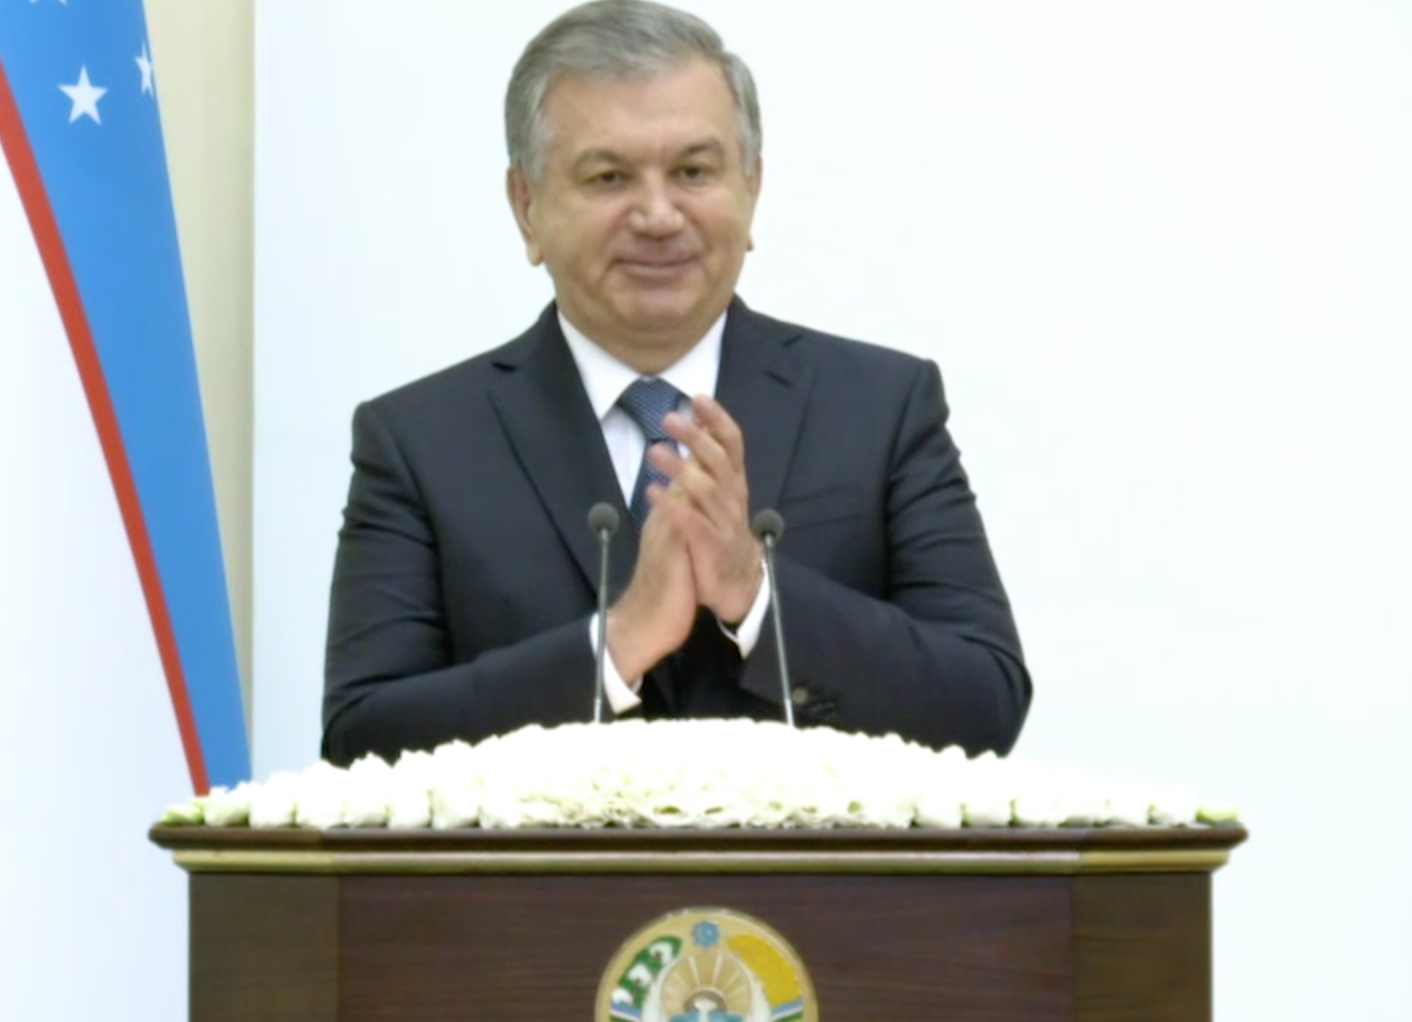 Шавкат Мирзиёев поздравил узбекистанцев с началом месяца Рамадан: что пожелал народу президент (видео)